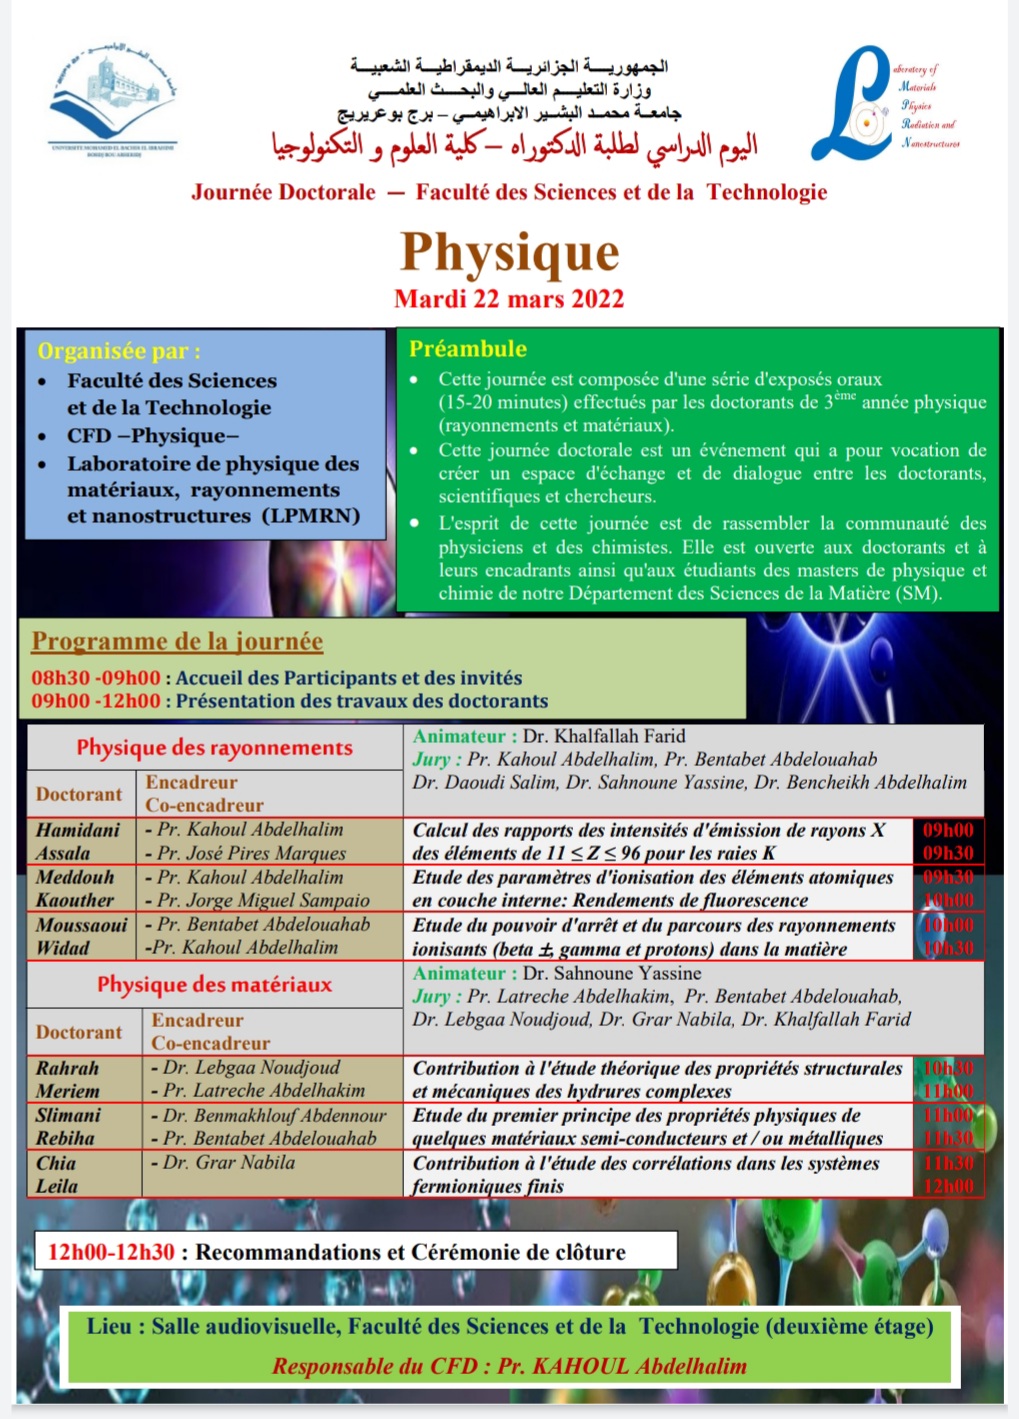 Programme journée doctorale Physique